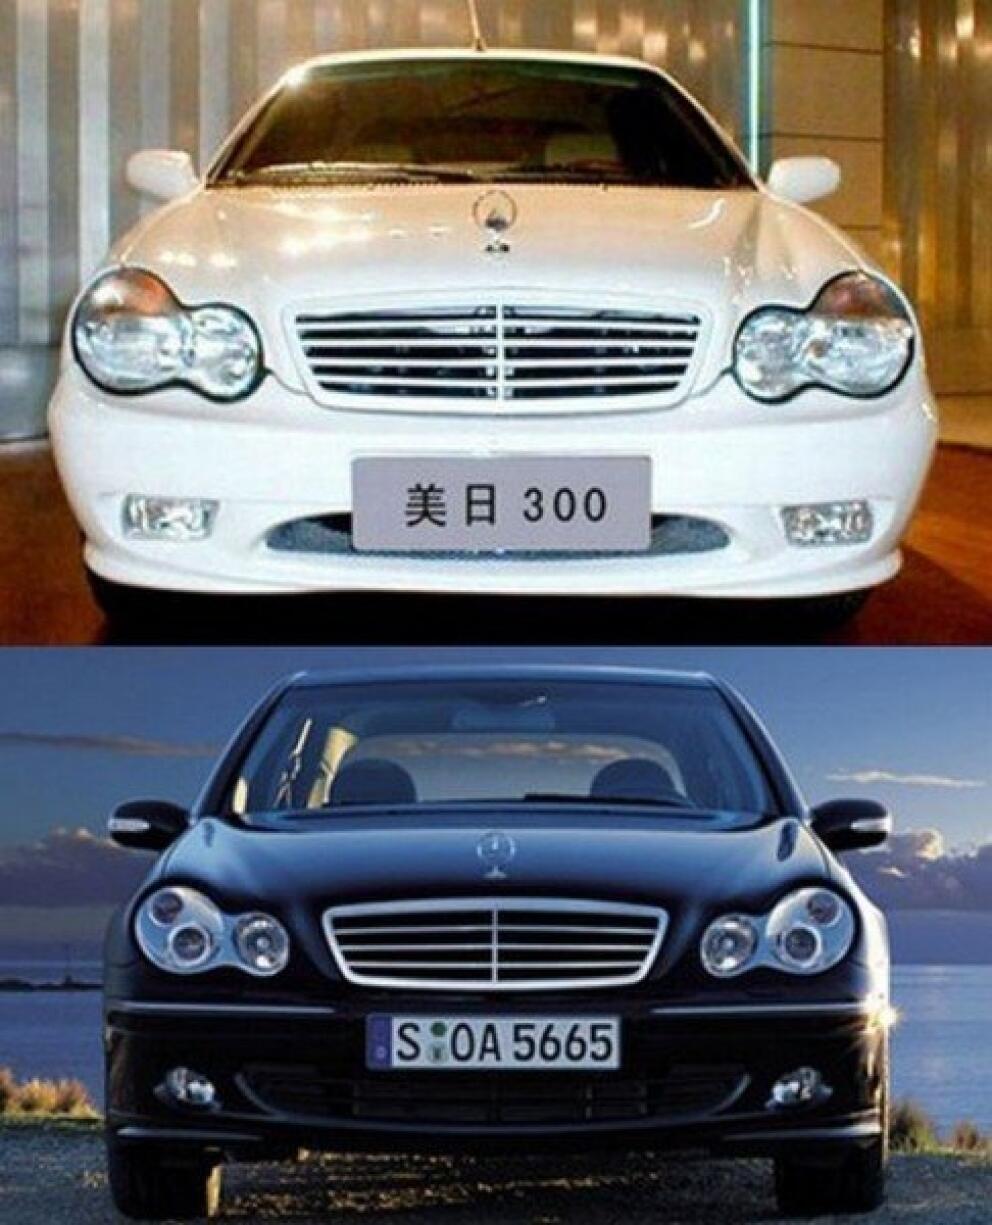 Китайская пародия. Китайские копии авто. Китайские машины копии известных брендов. Китайские копии автомобилей известных.